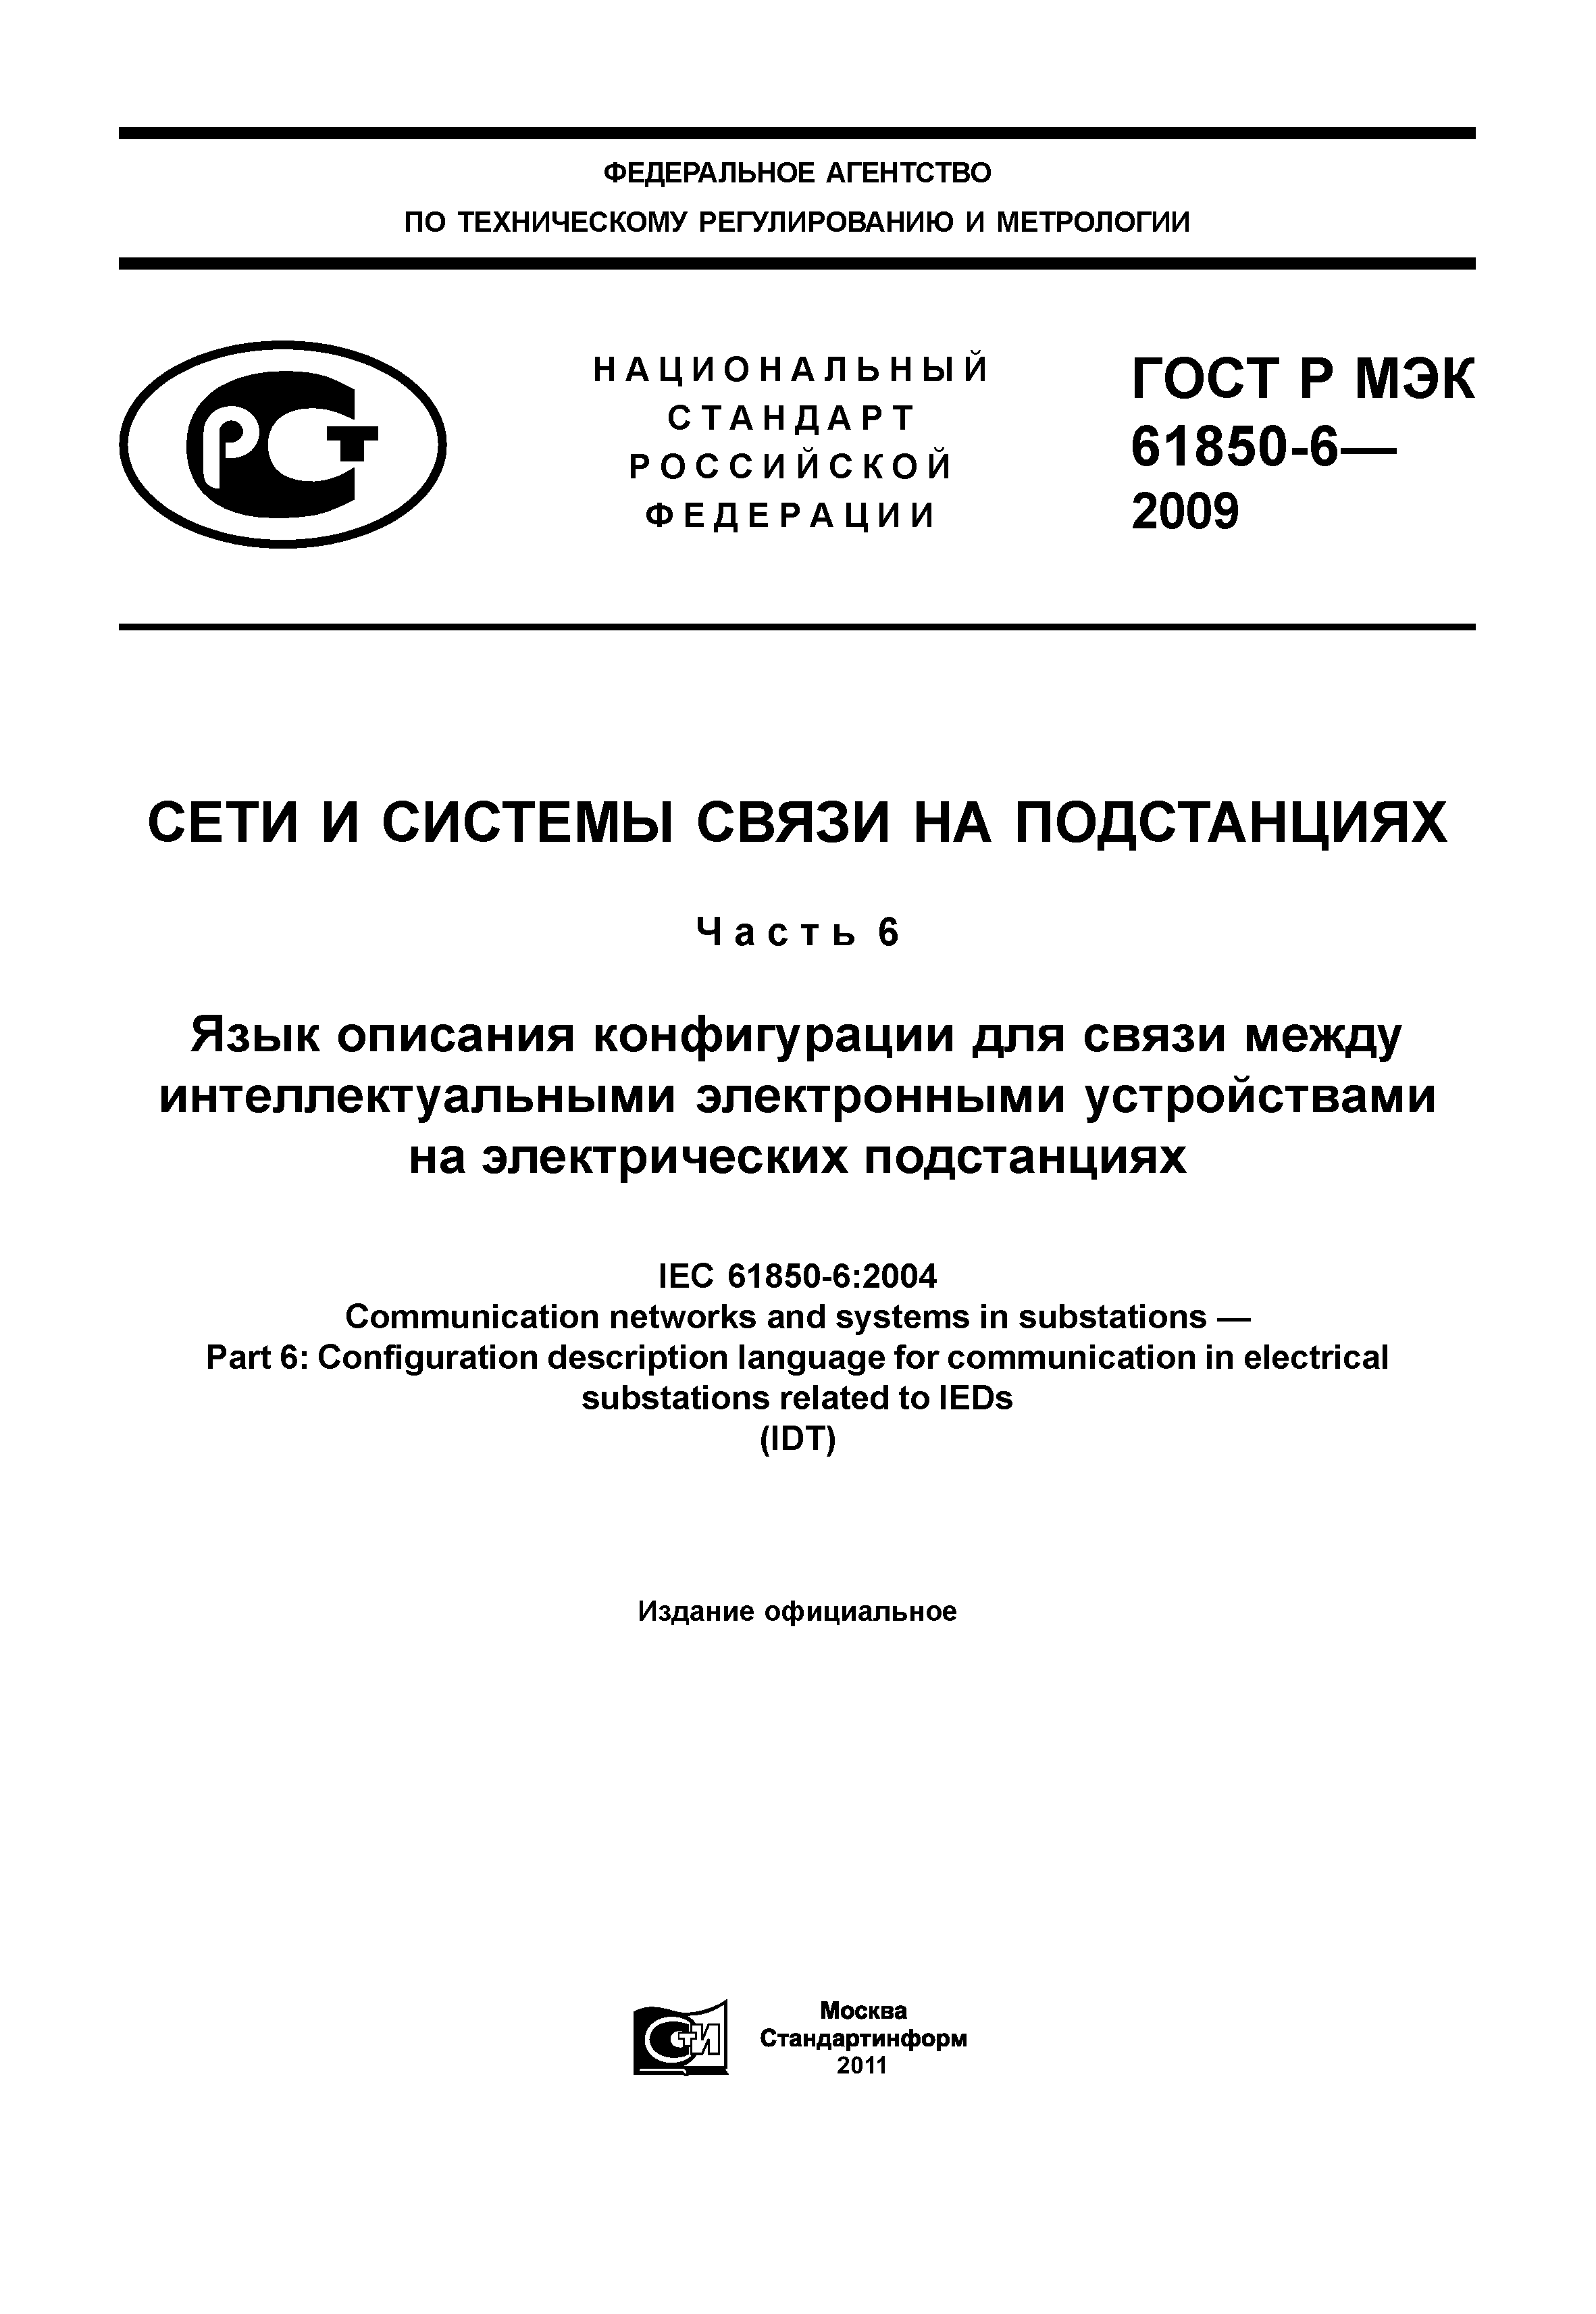 ГОСТ Р МЭК 61850-6-2009